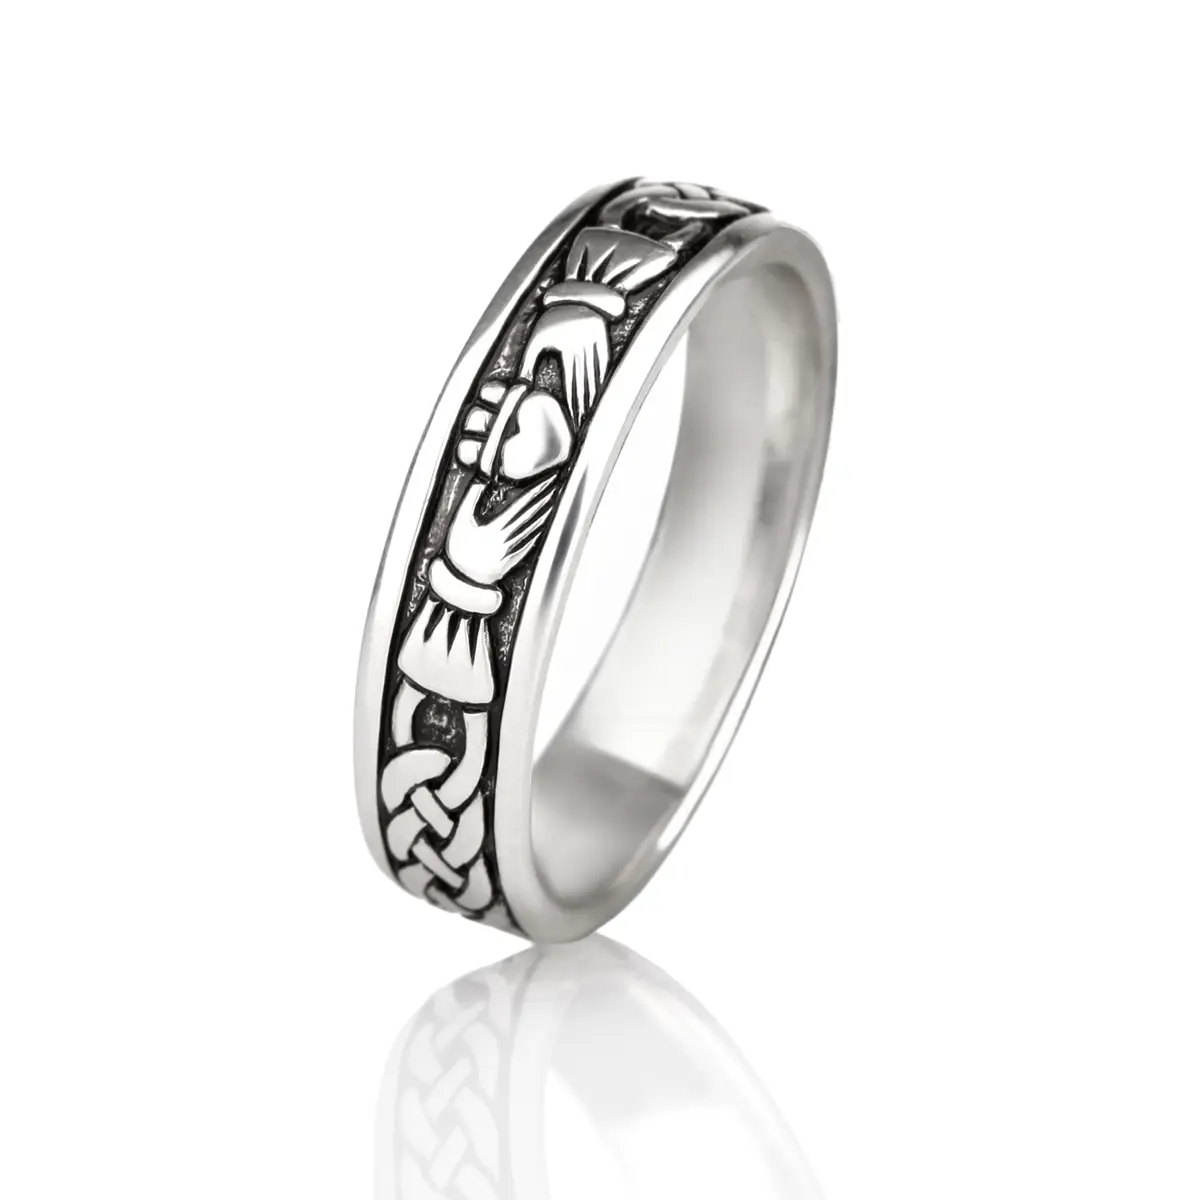 Ladies Claddagh Ring aus Sterling Silber - handgefertigt in Irland